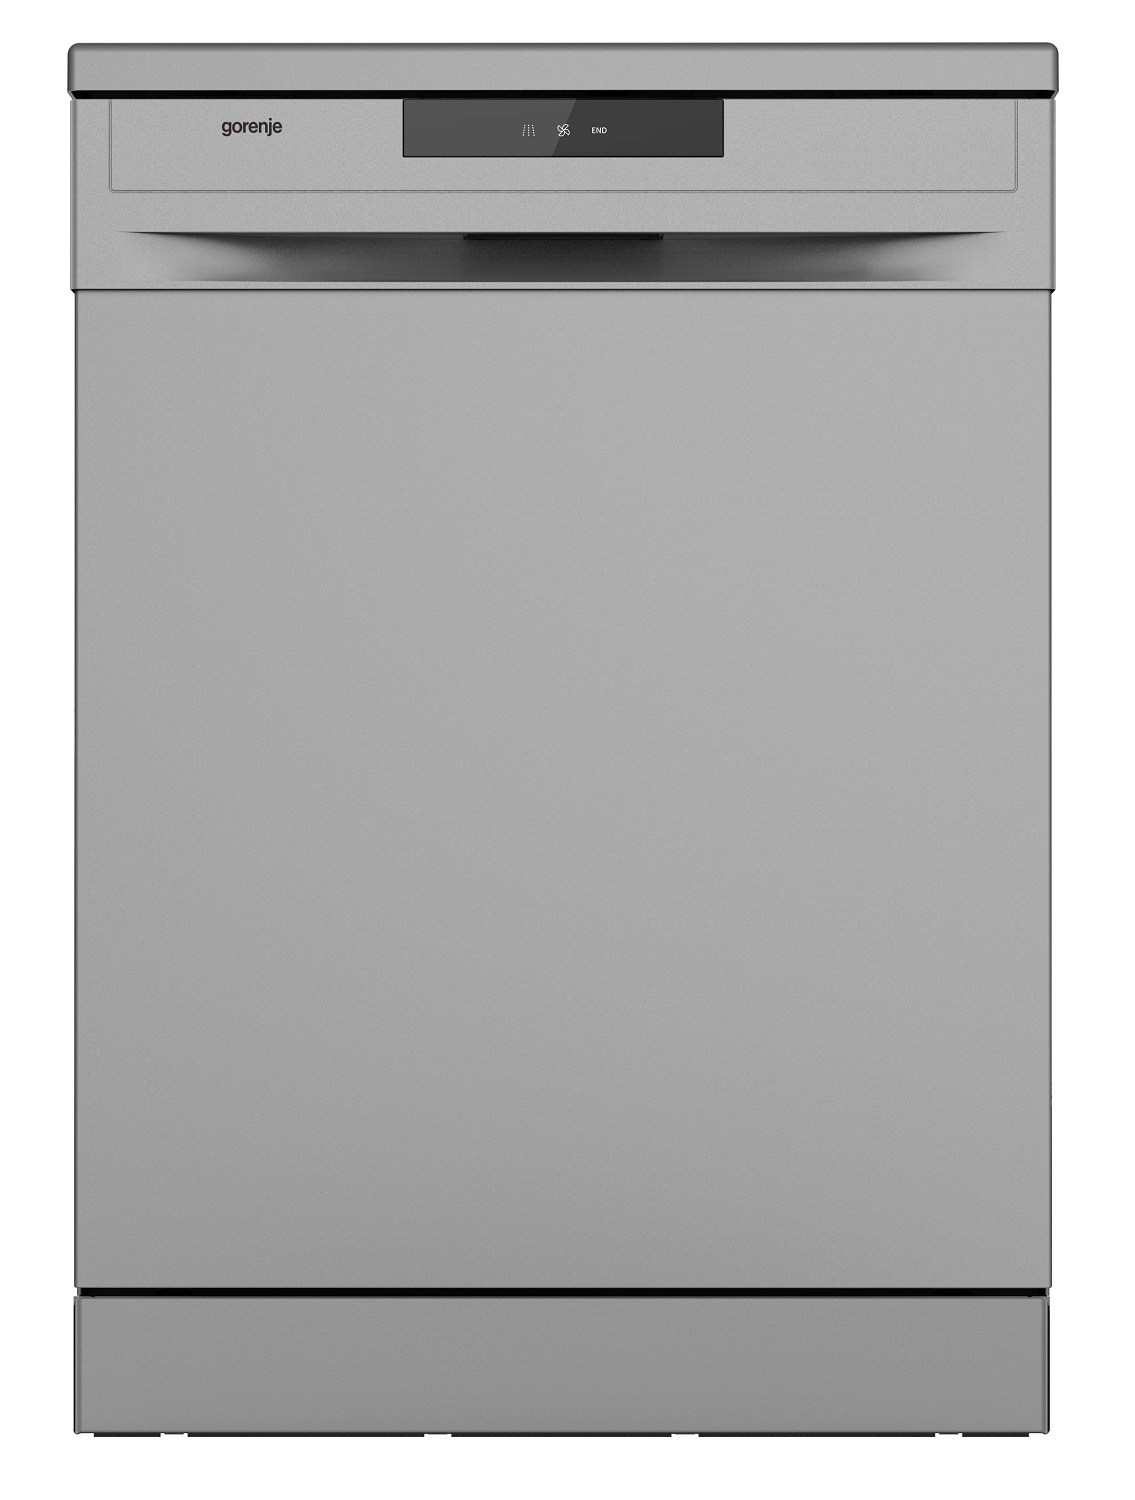 Встроенная посудомоечная машина 60 см горенье. Посудомоечная машина Gorenje gs520e15s. Посудомоечная машина Gorenje gs52040s. Посудомоечная машина Gorenje gs52010s. Посудомойка Gorenje gs531e10w.